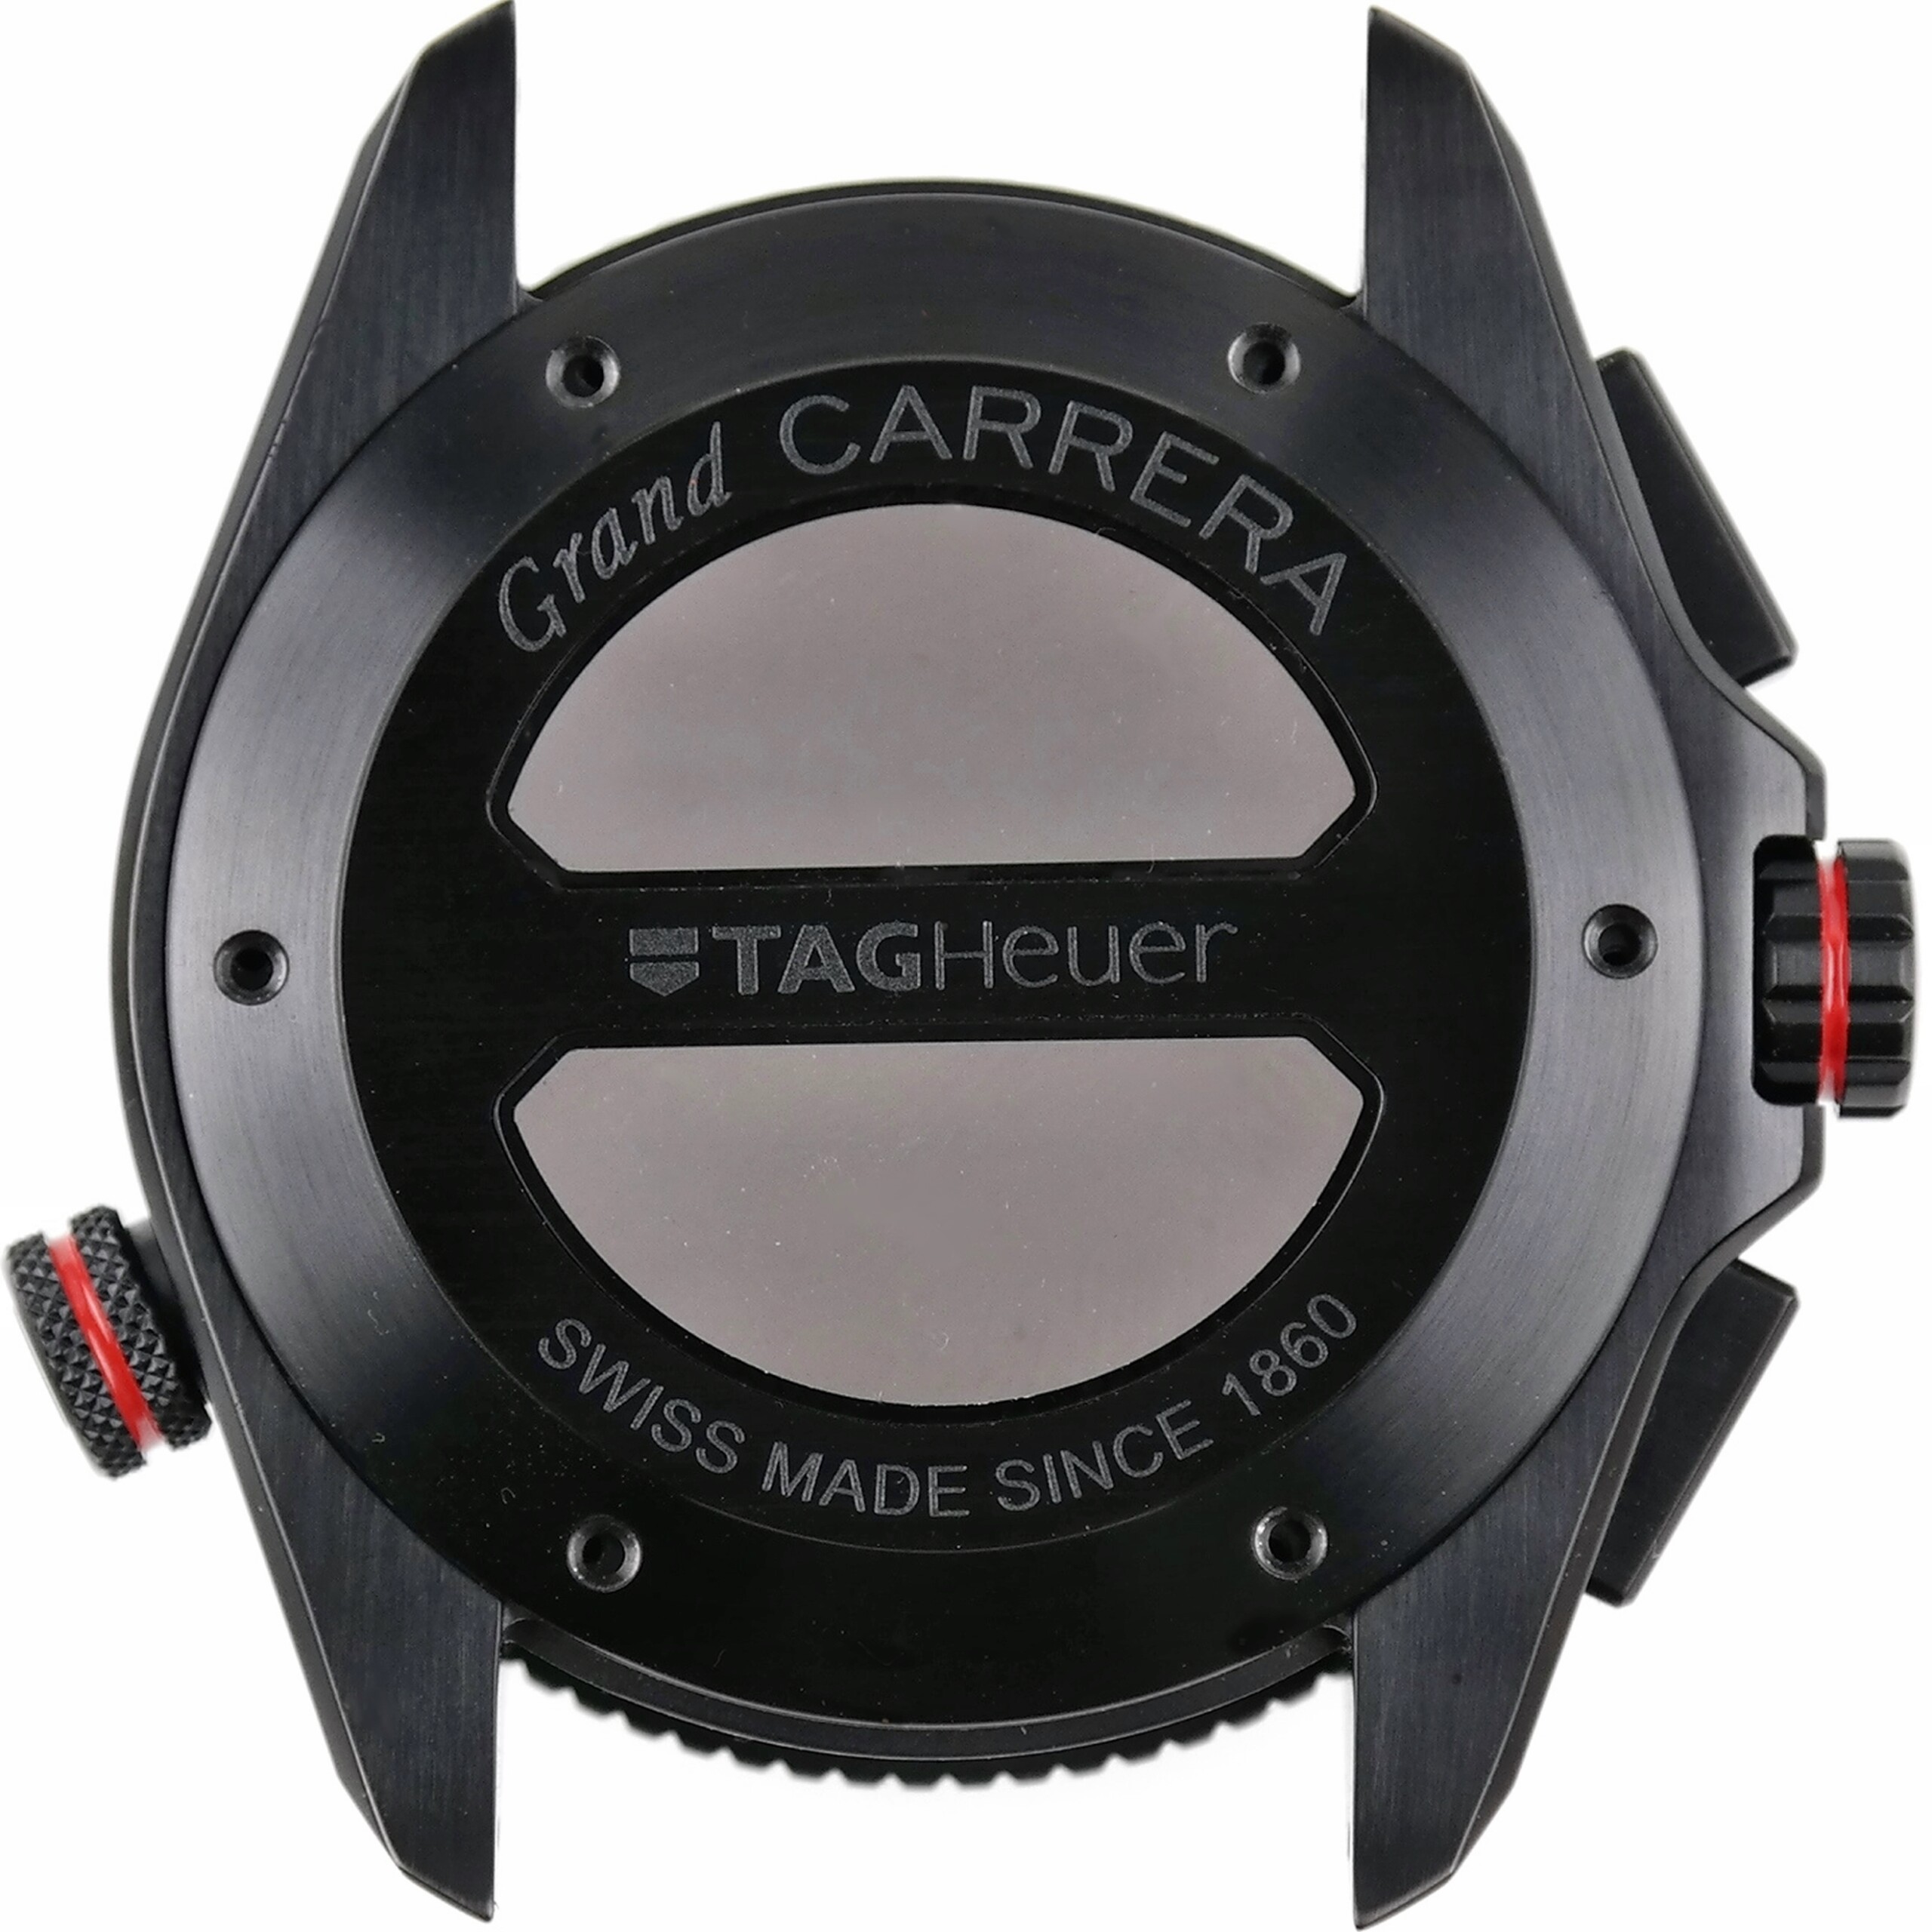 TAG Heuer Grand Carrera Calibre 36 RS Caliper Watch Case Parts